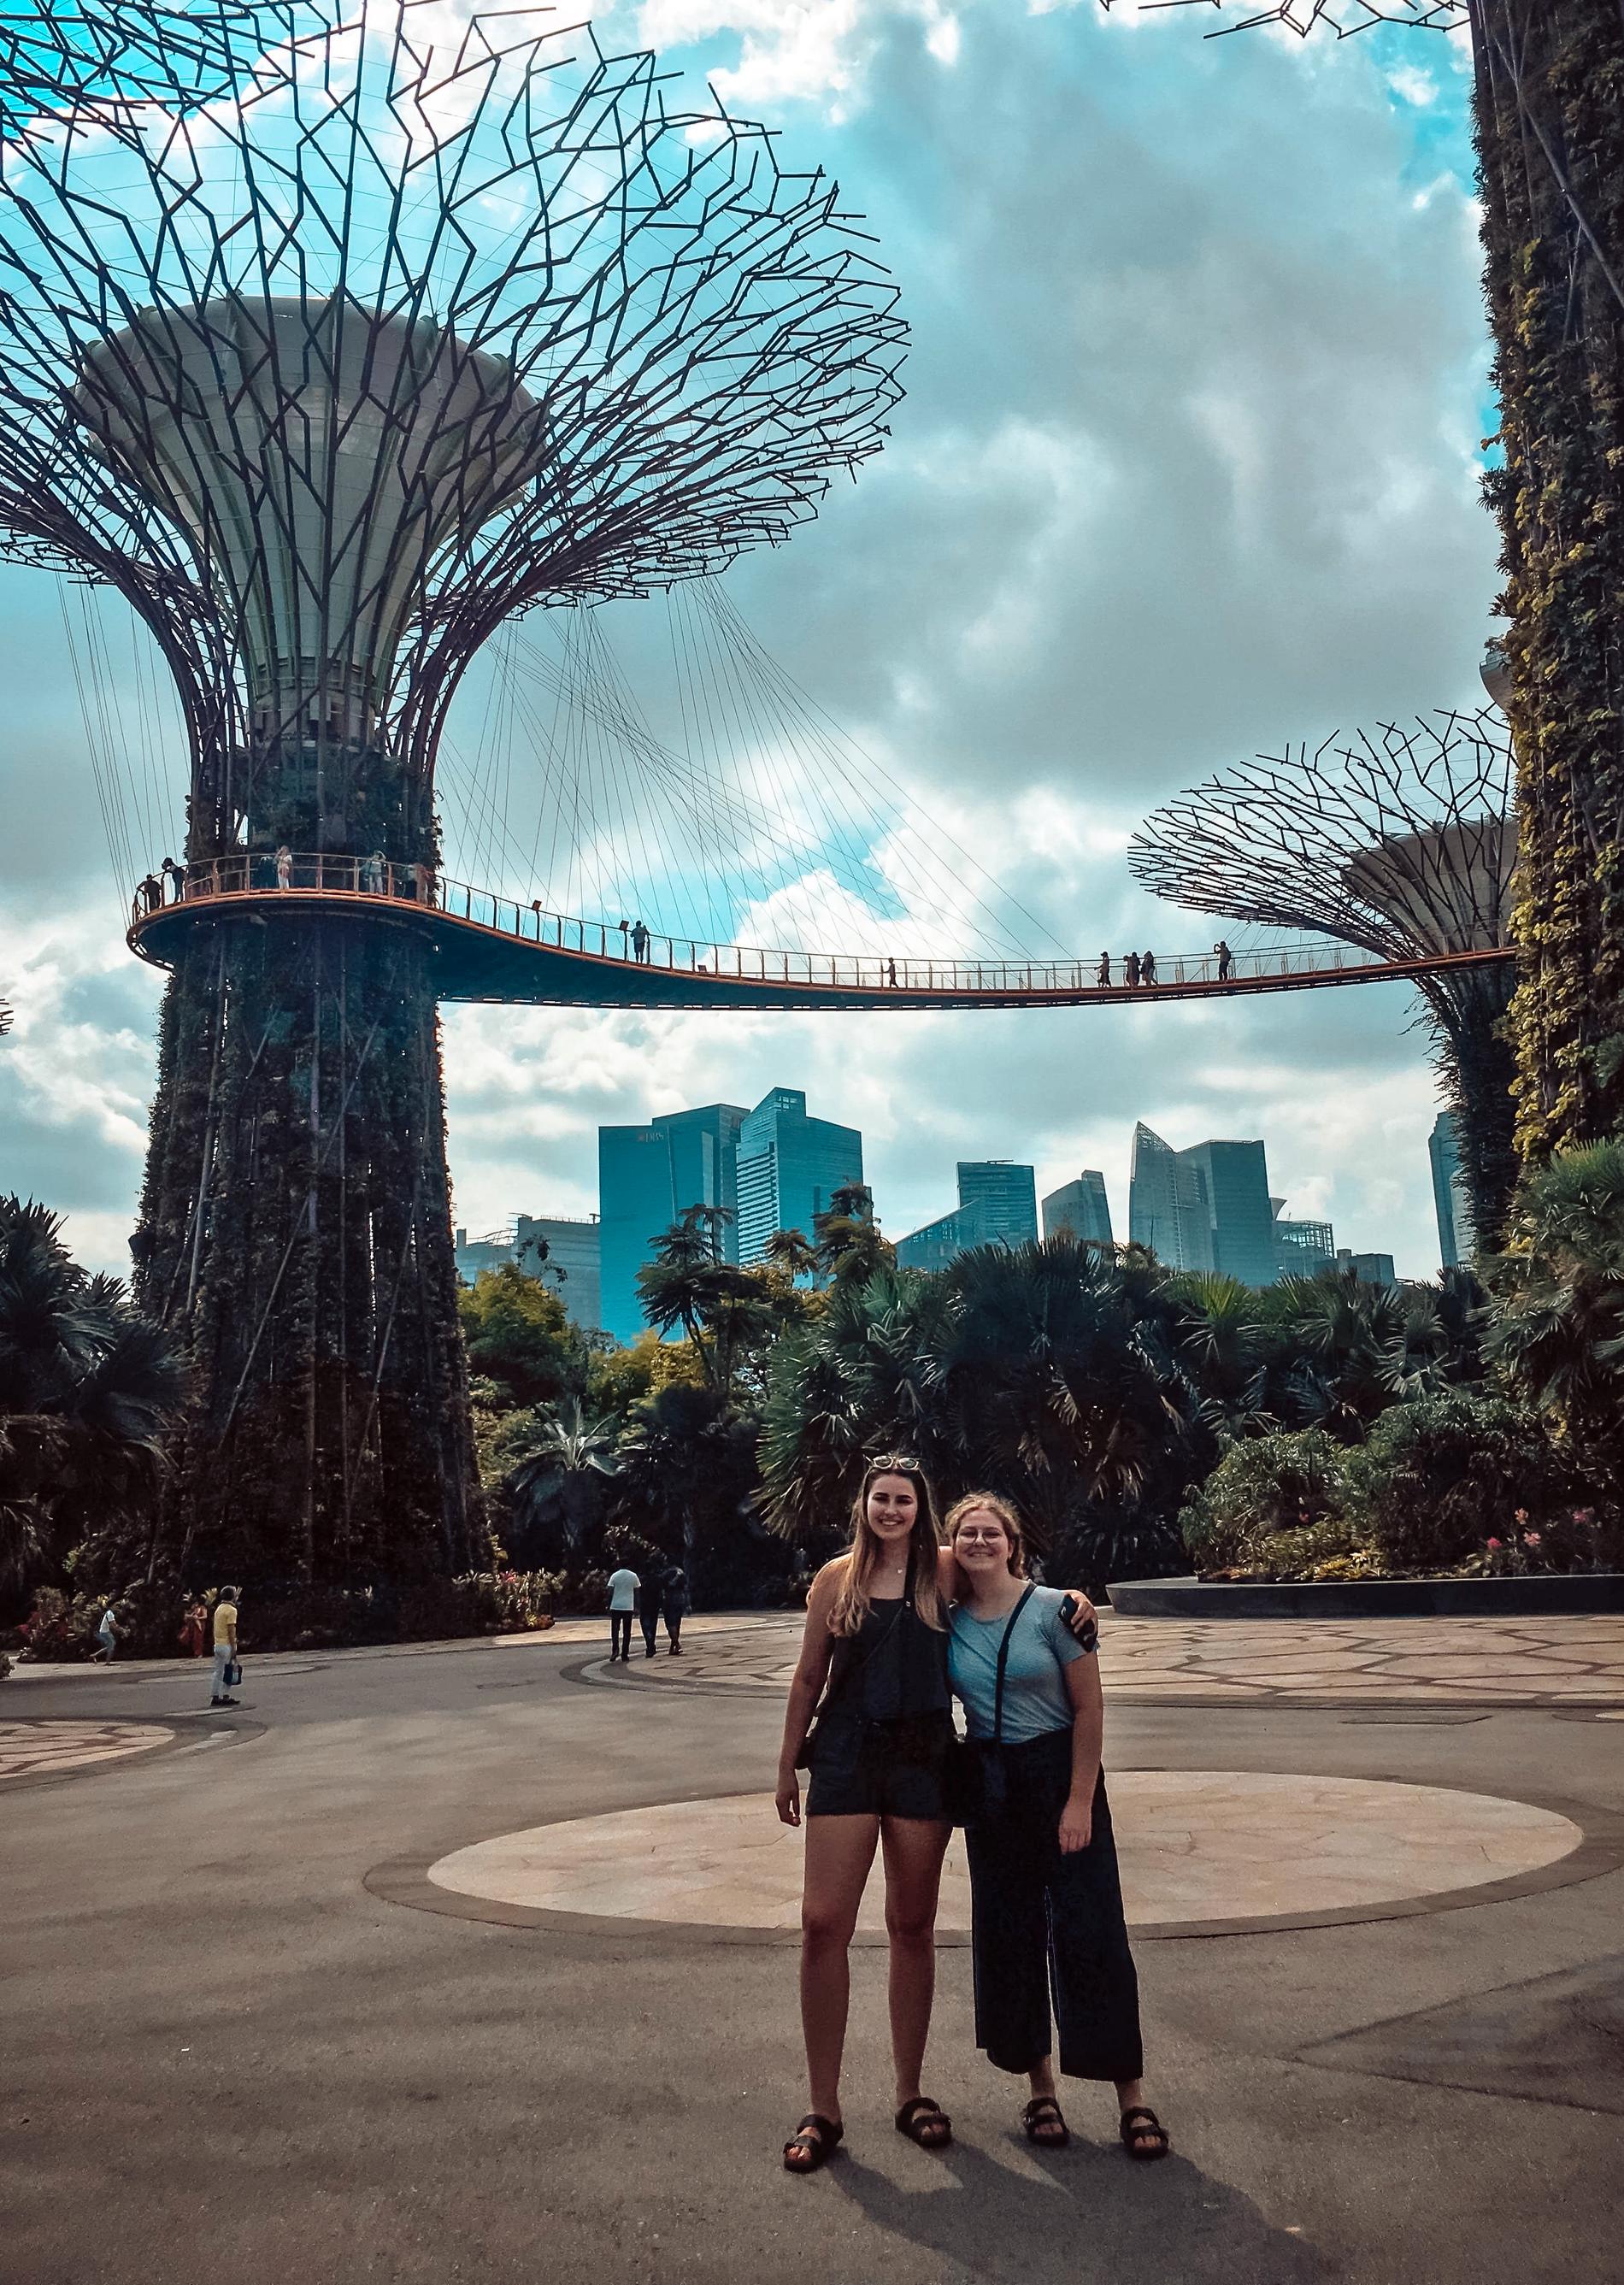 Det ble budsjettert til opplevelsesrike øyeblikk da Neverdal bodde tre måneder i Asia. Hun og ei venninne benyttet sjansen til å oppleve Singapore.